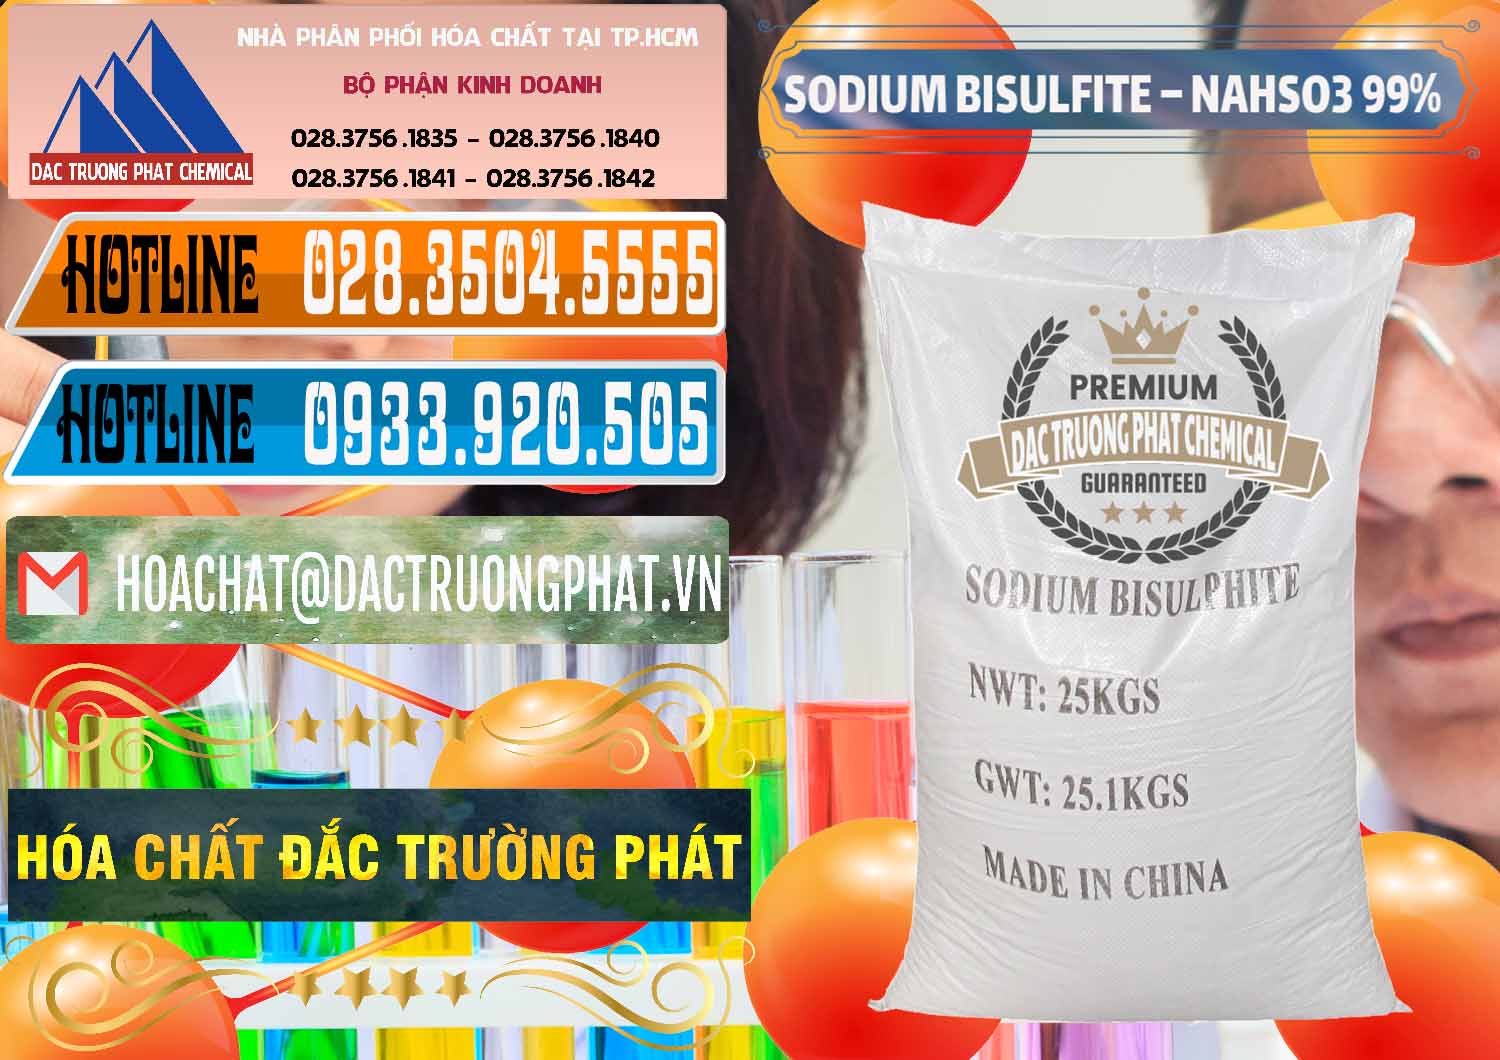 Cty chuyên kinh doanh ( bán ) Sodium Bisulfite – NAHSO3 Trung Quốc China - 0140 - Cty kinh doanh và phân phối hóa chất tại TP.HCM - stmp.net